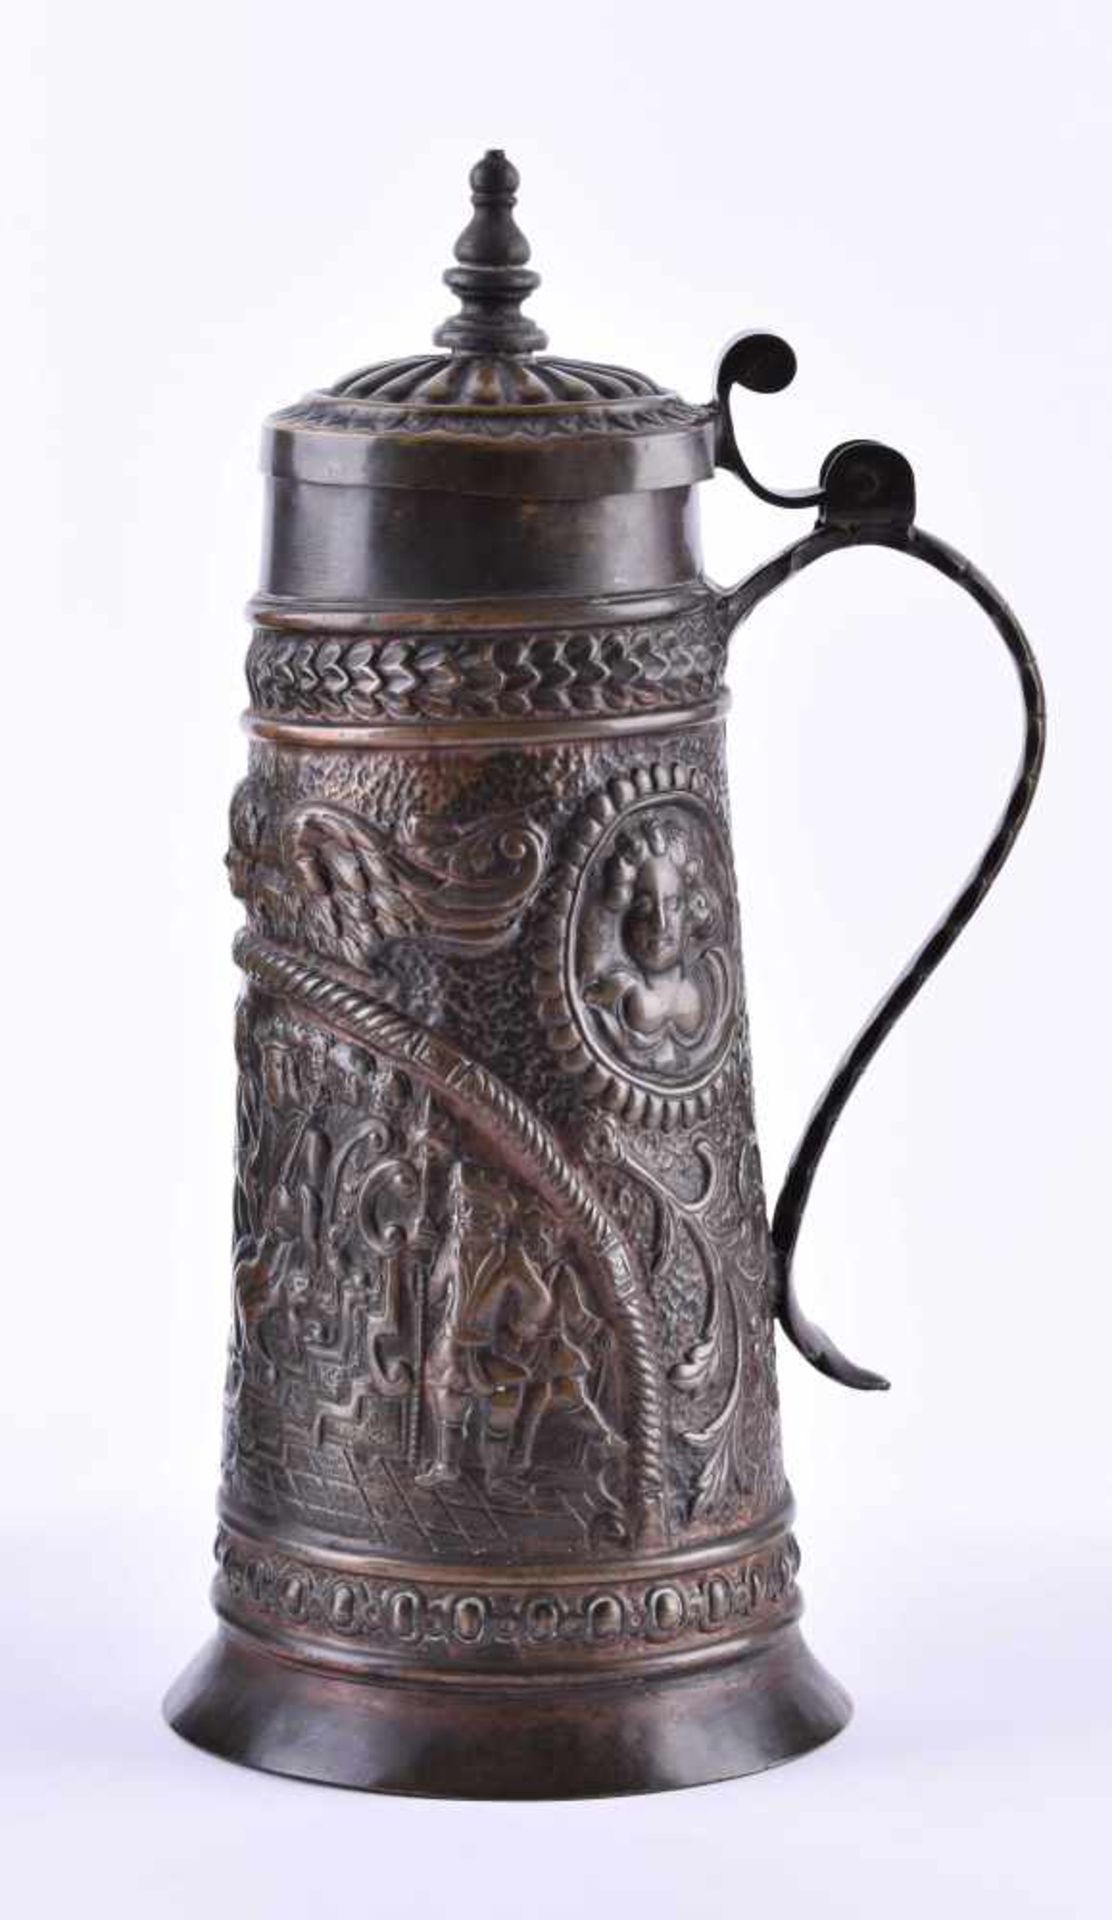 Barock-Henkelkrug um 1740Bronze, H: 29,5 cmBaroque handle jug around 1740bronze, height: 29.5 cm